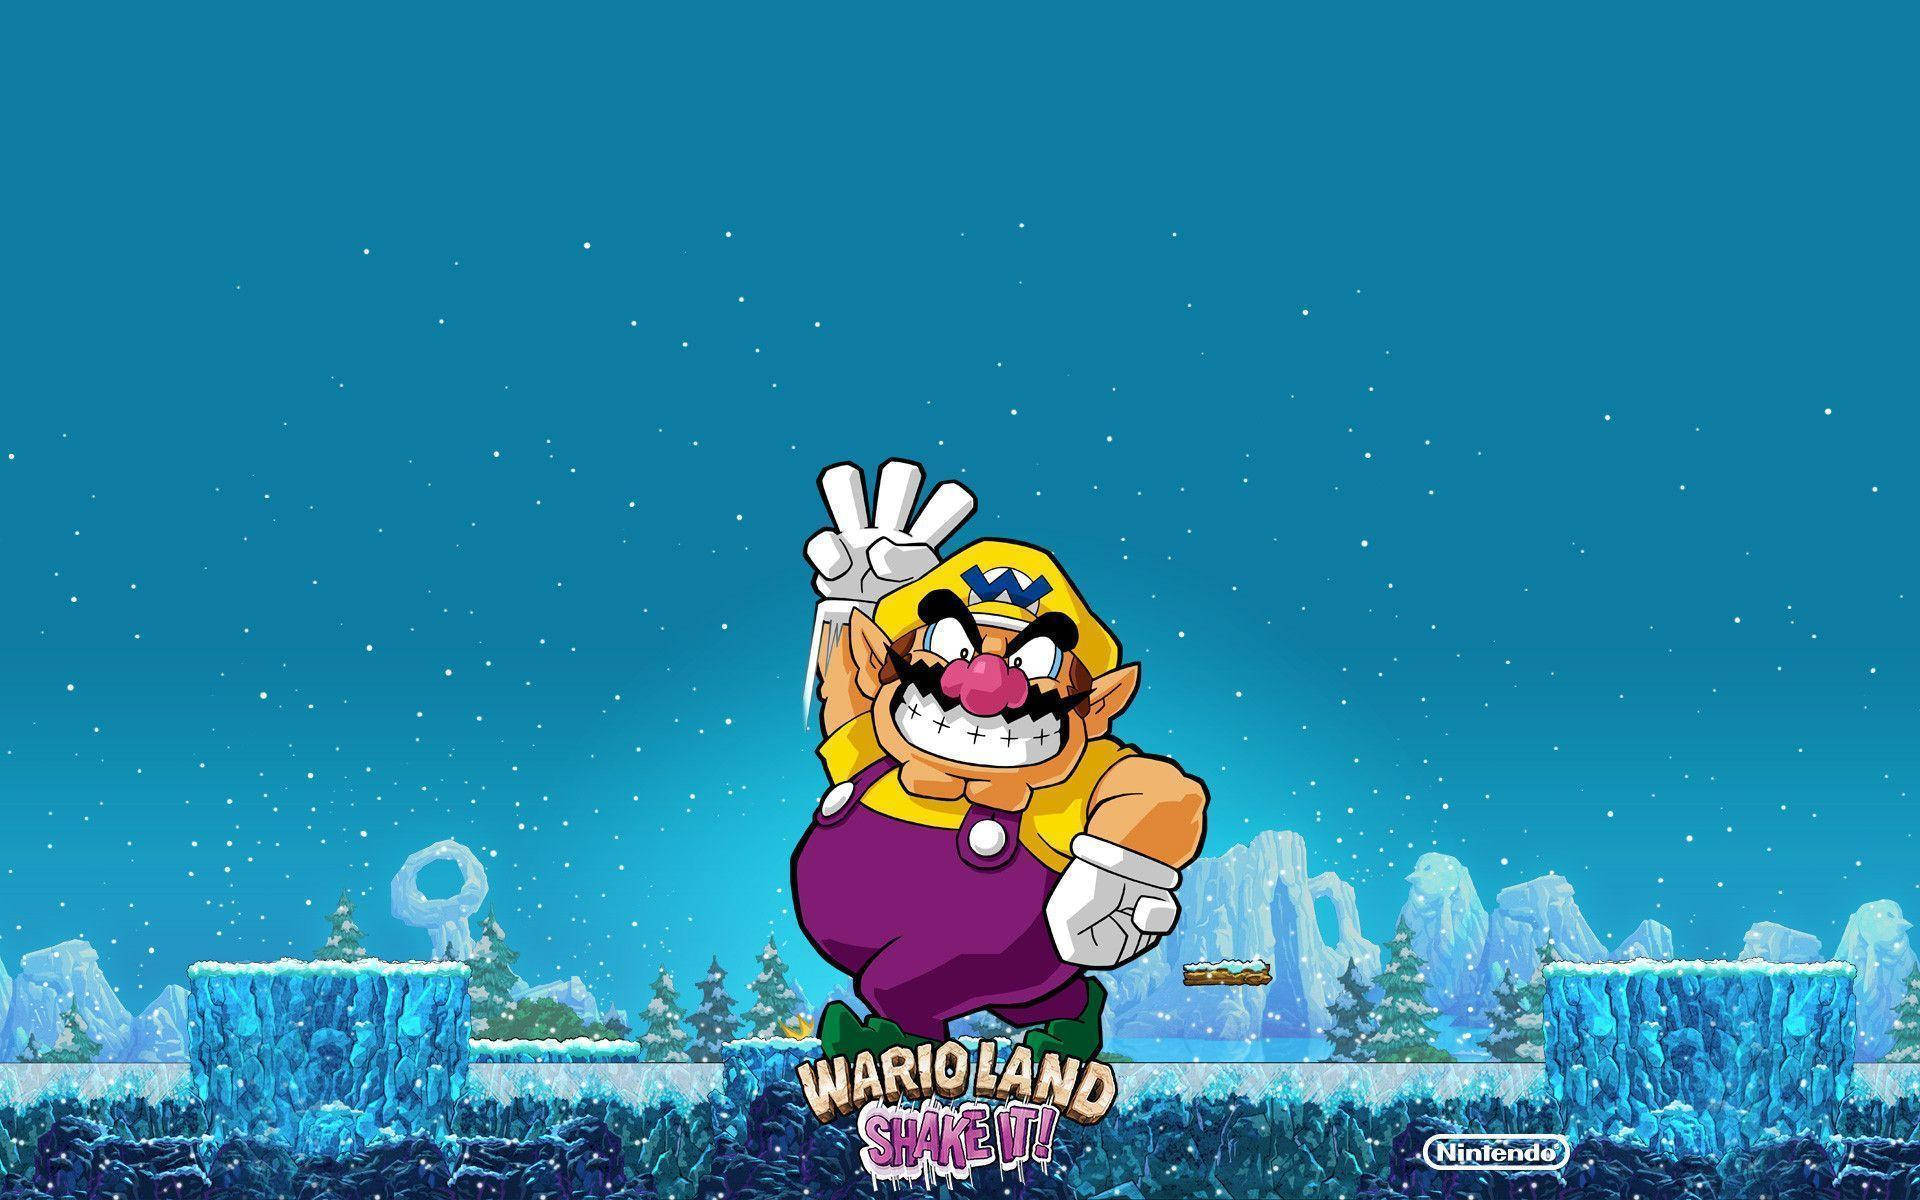 Wario Land Nintendo Characters